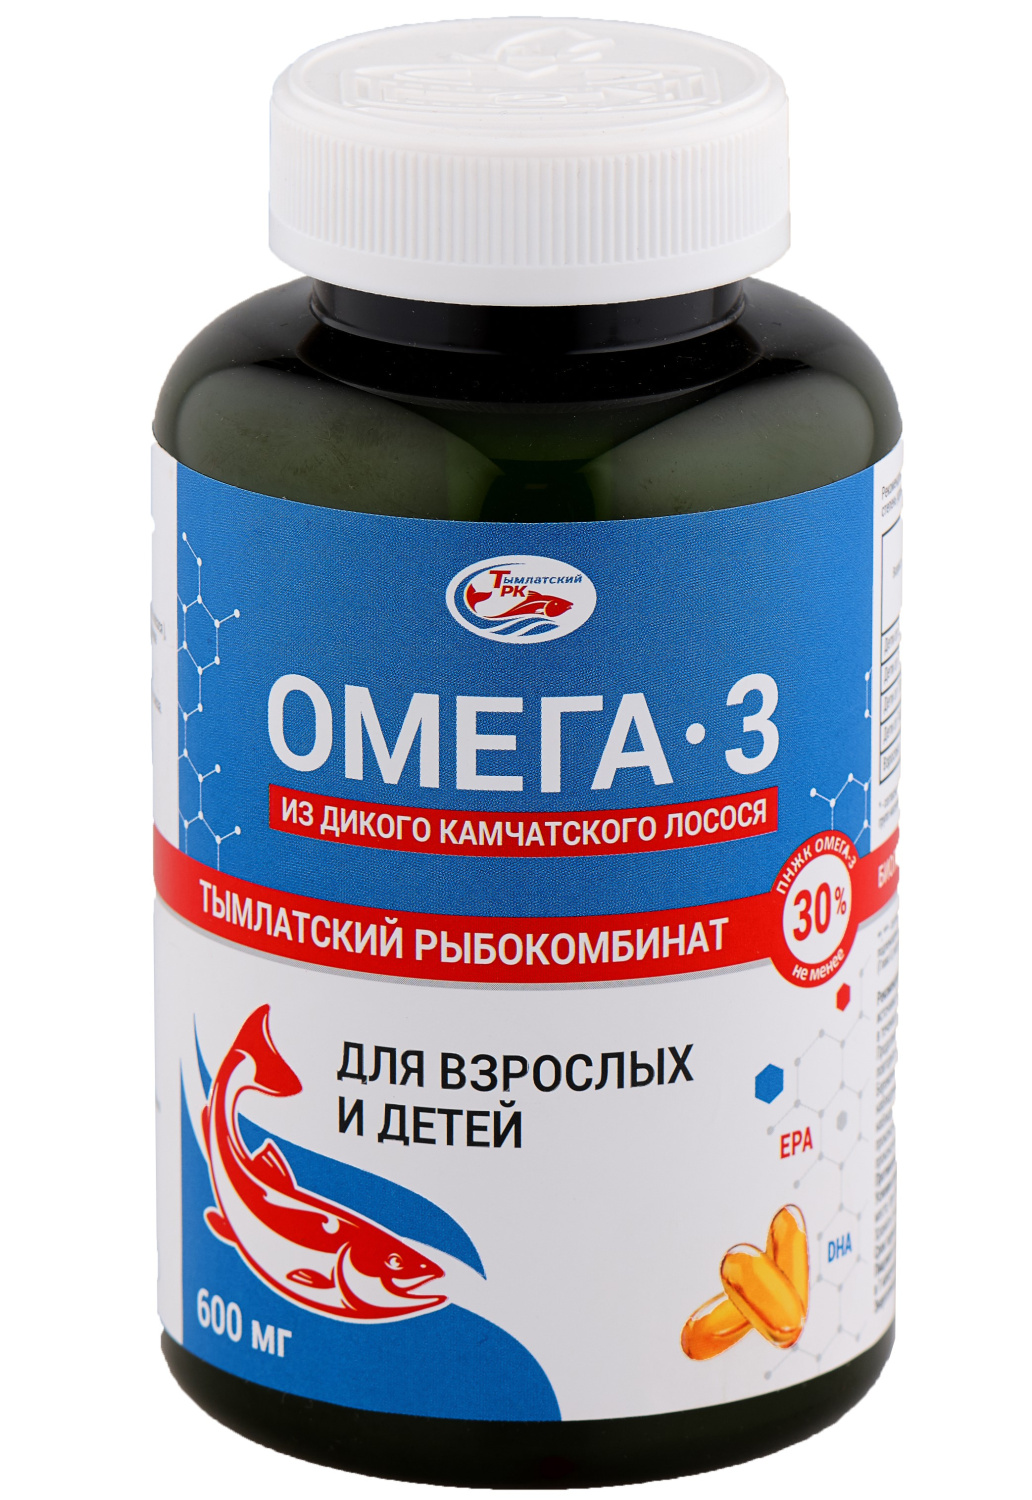 Омега-3 из дикого камчатского лосося Тымлатский рыбокомбинат (Salmoniсa), 240 капс. по 600 мг.